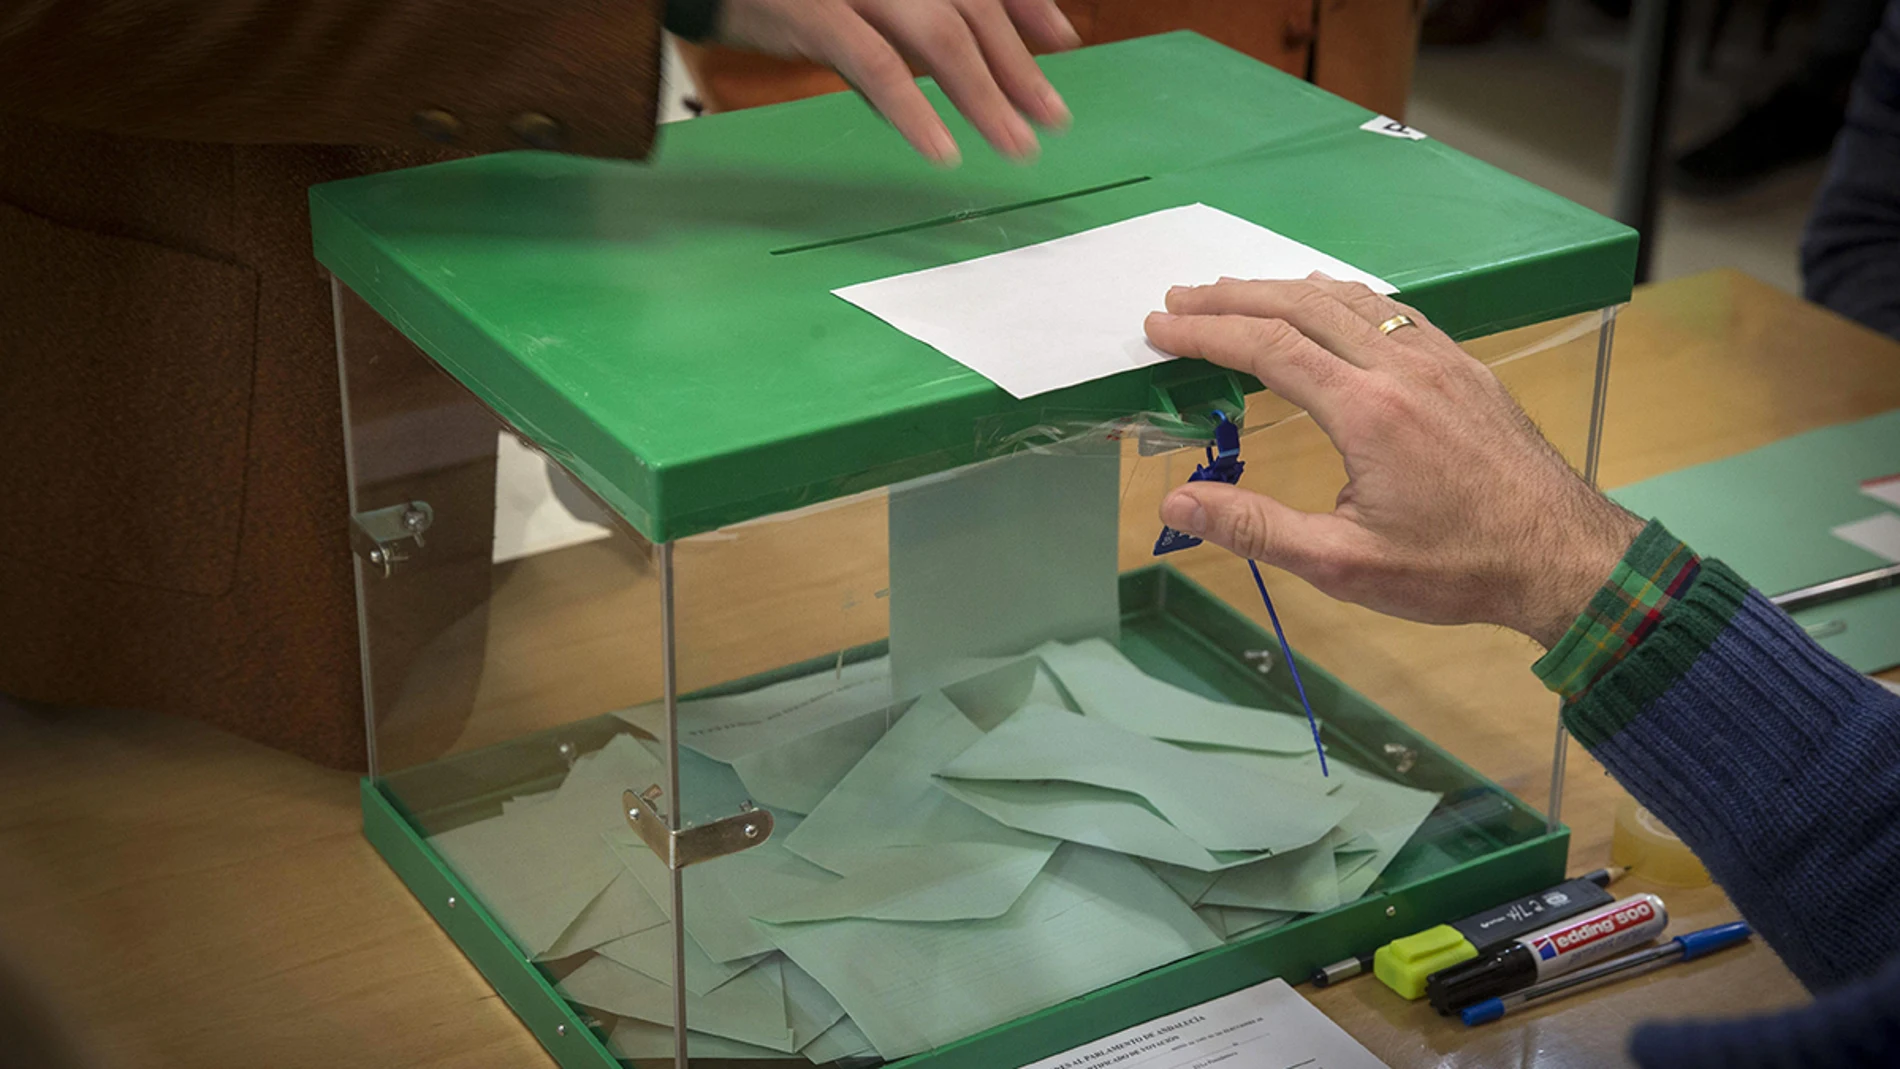 Un votante ejerce su derecho introduciendo la papeleta en la urna en un colegio electoral en Sevilla